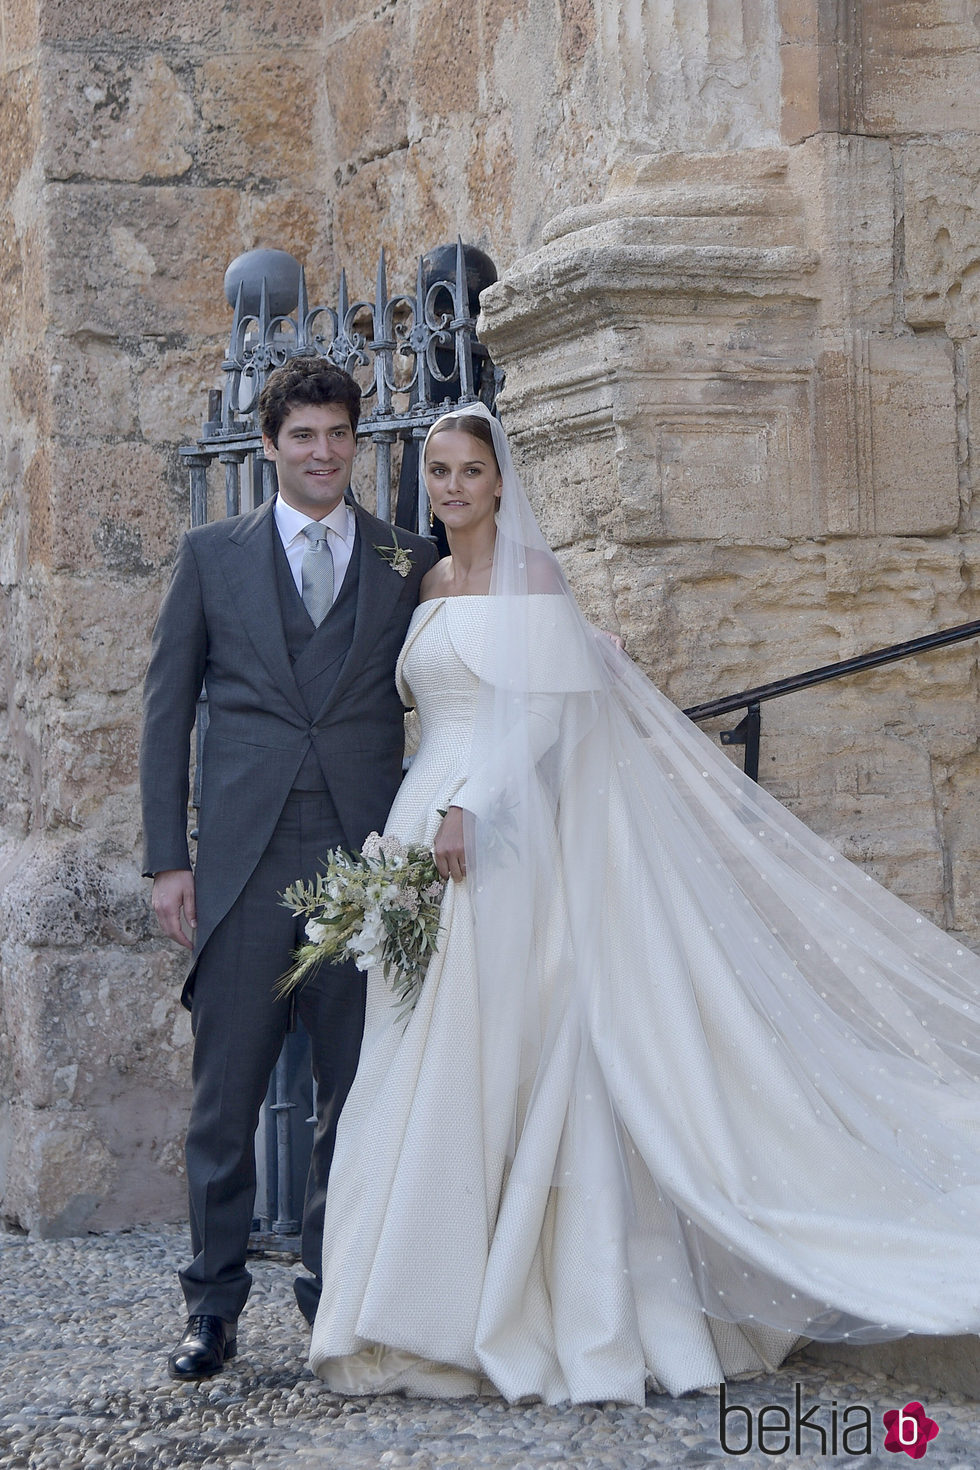 Alejandro Santo Domingo y Lady Charlotte Wellesley durante su boda en Granada